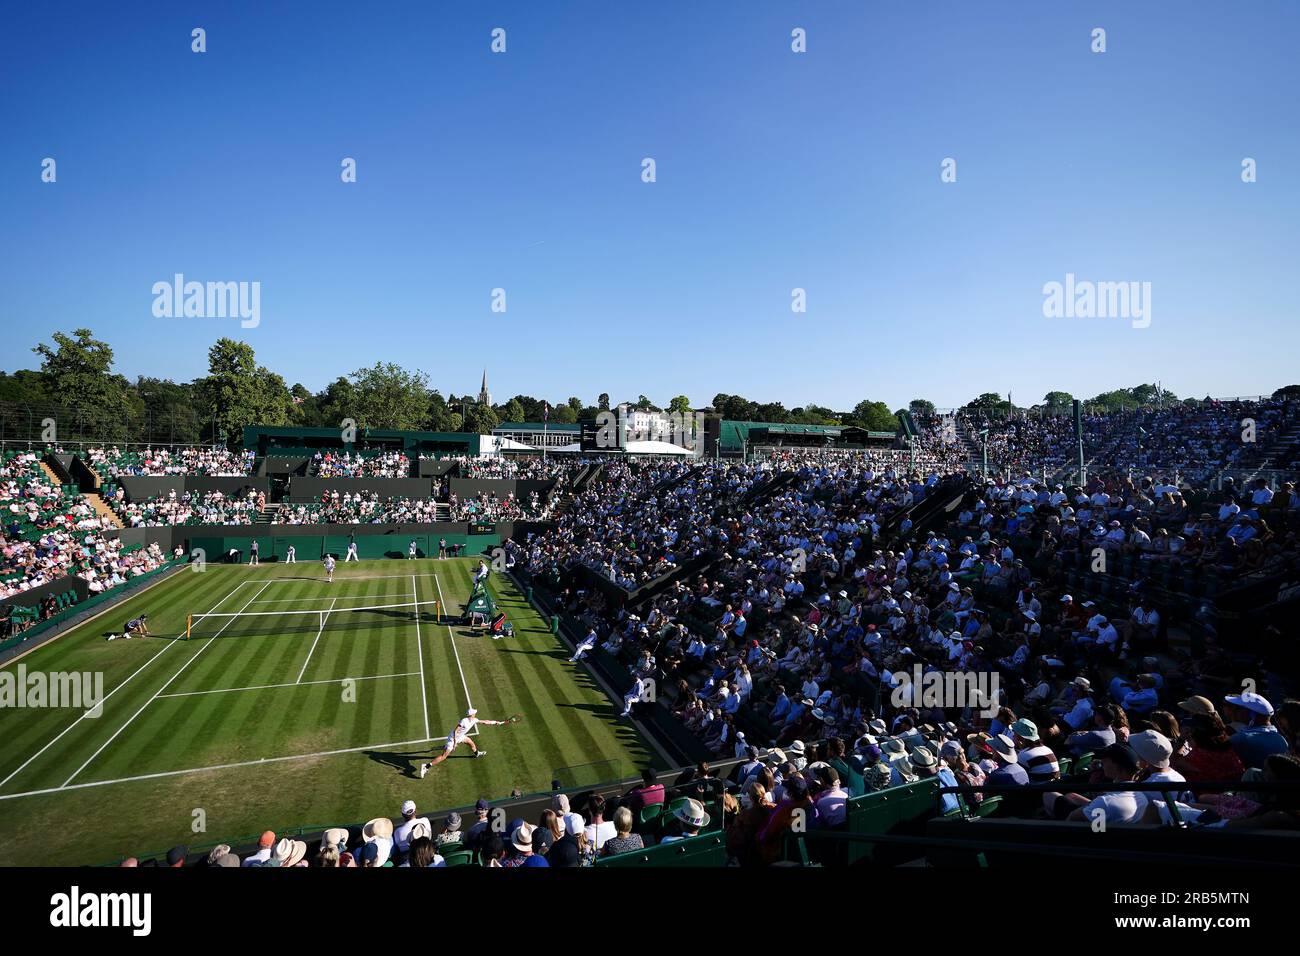 Vista generale della partita tra Denis Shapovalov e Liam Broady nel quinto giorno dei Campionati di Wimbledon 2023 all'All England Lawn Tennis and Croquet Club di Wimbledon. Data immagine: Venerdì 7 luglio 2023. Foto Stock